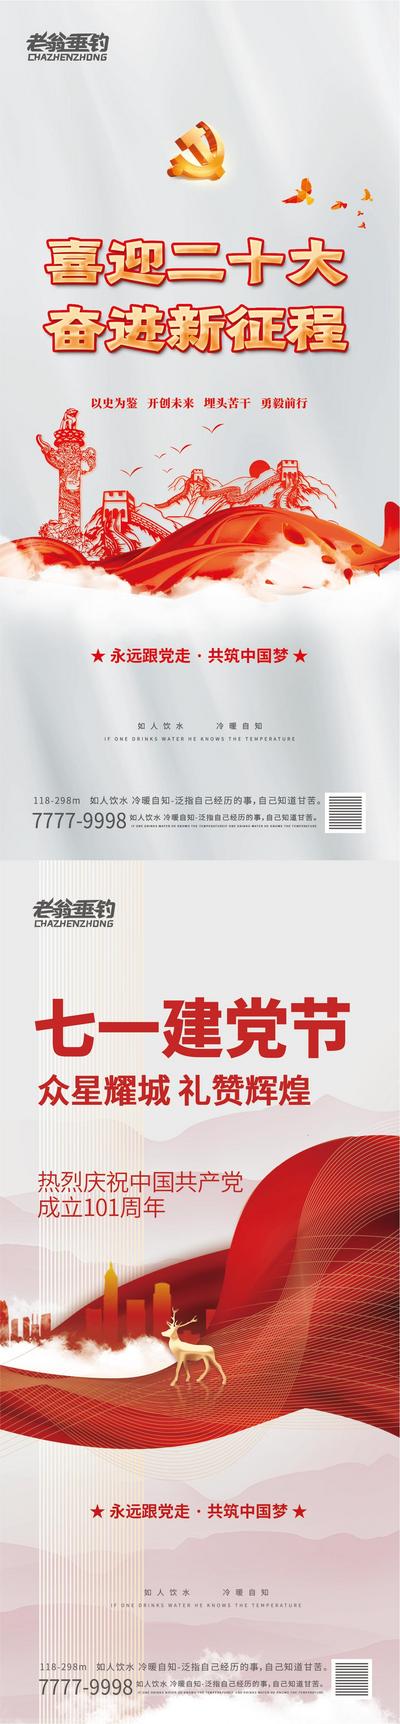 南门网 建党节节日移动端海报